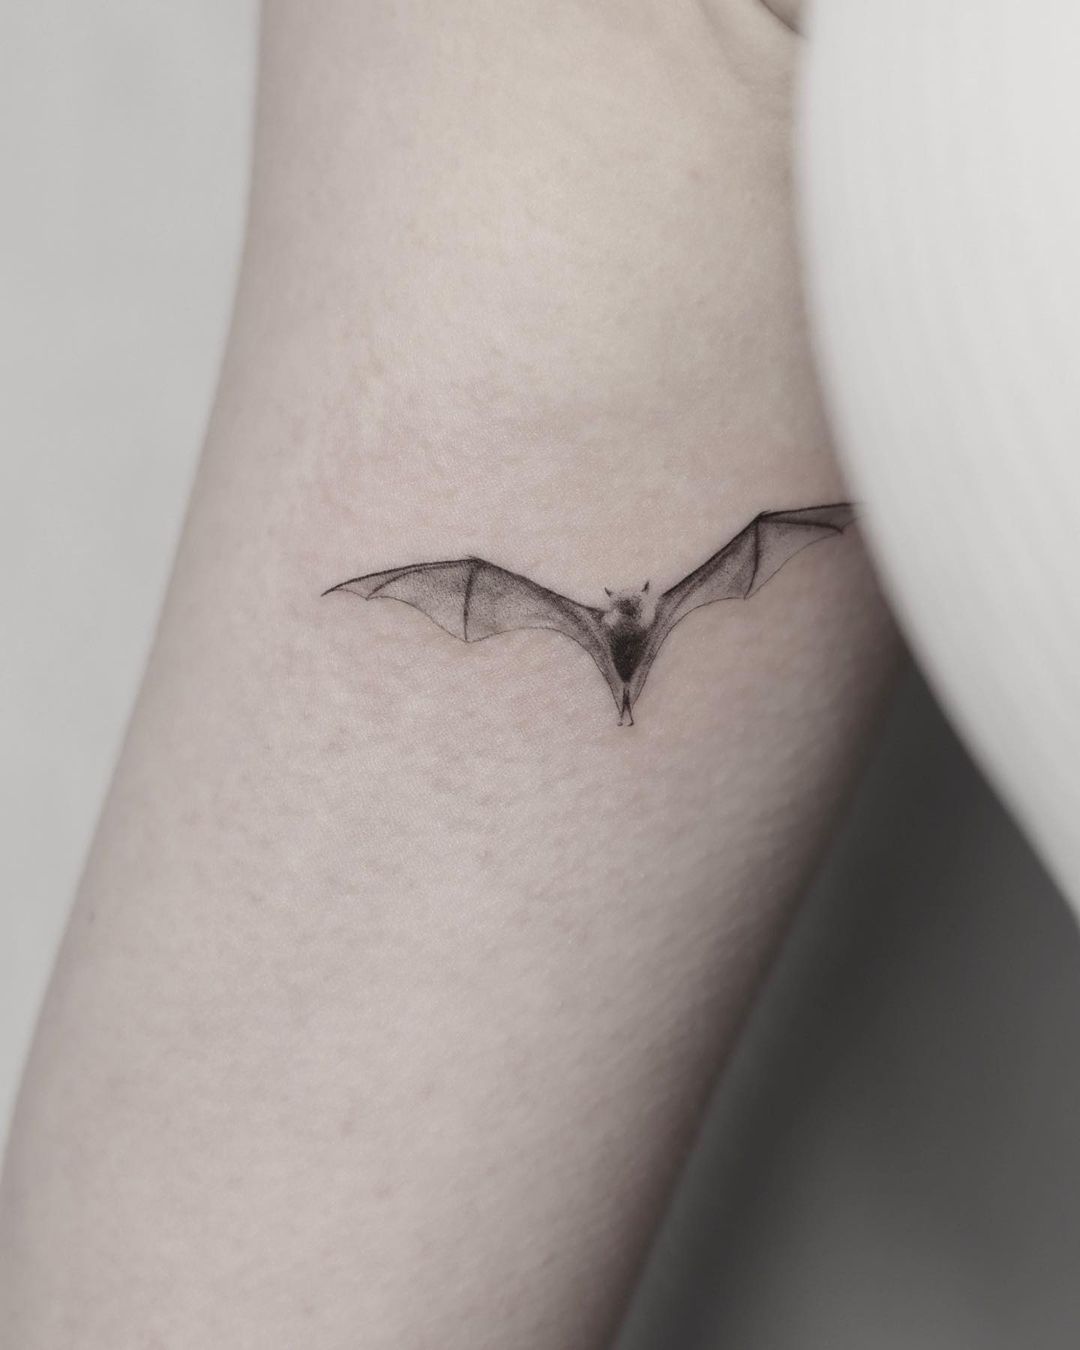 Bat and crystals tattoo design by kryptickim on DeviantArt